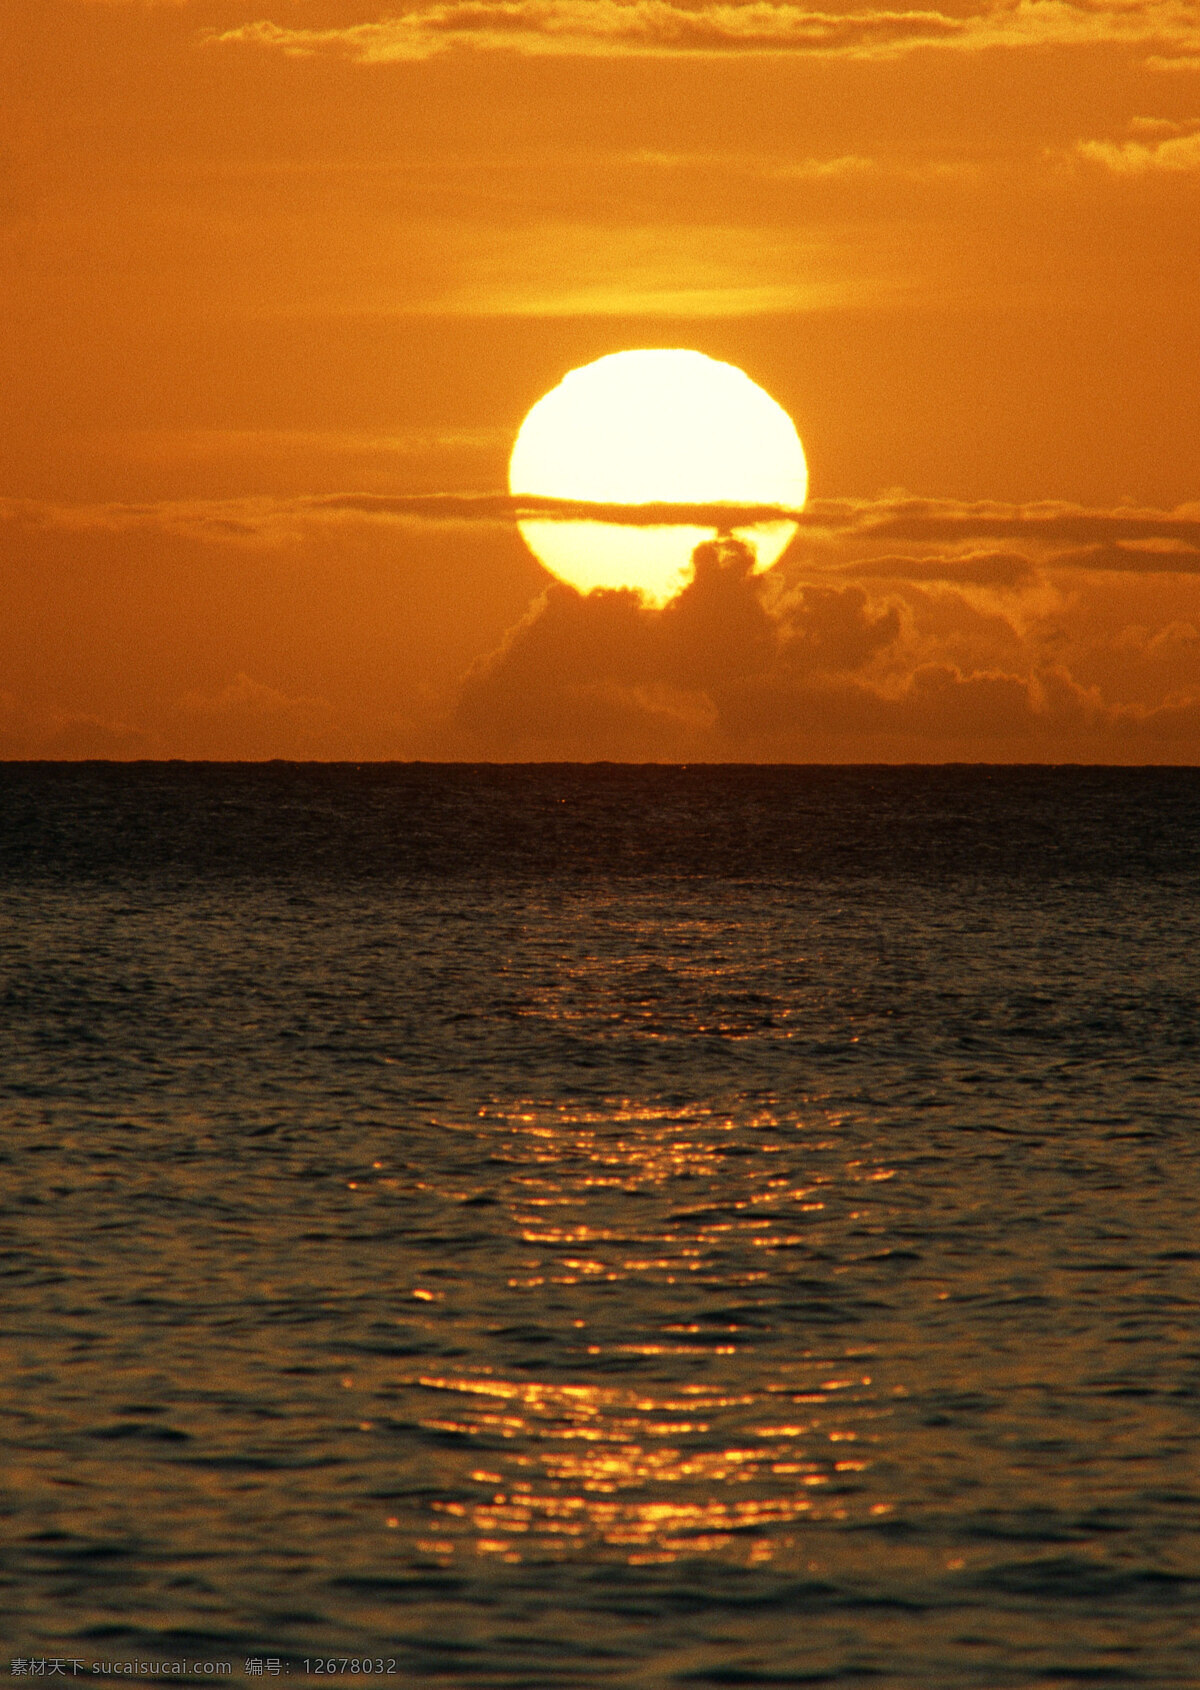 夕阳 落日 旅游 风景区 夏威夷 夏威夷风光 悠闲 假日 海平面 黄昏 金色 大海图片 风景图片